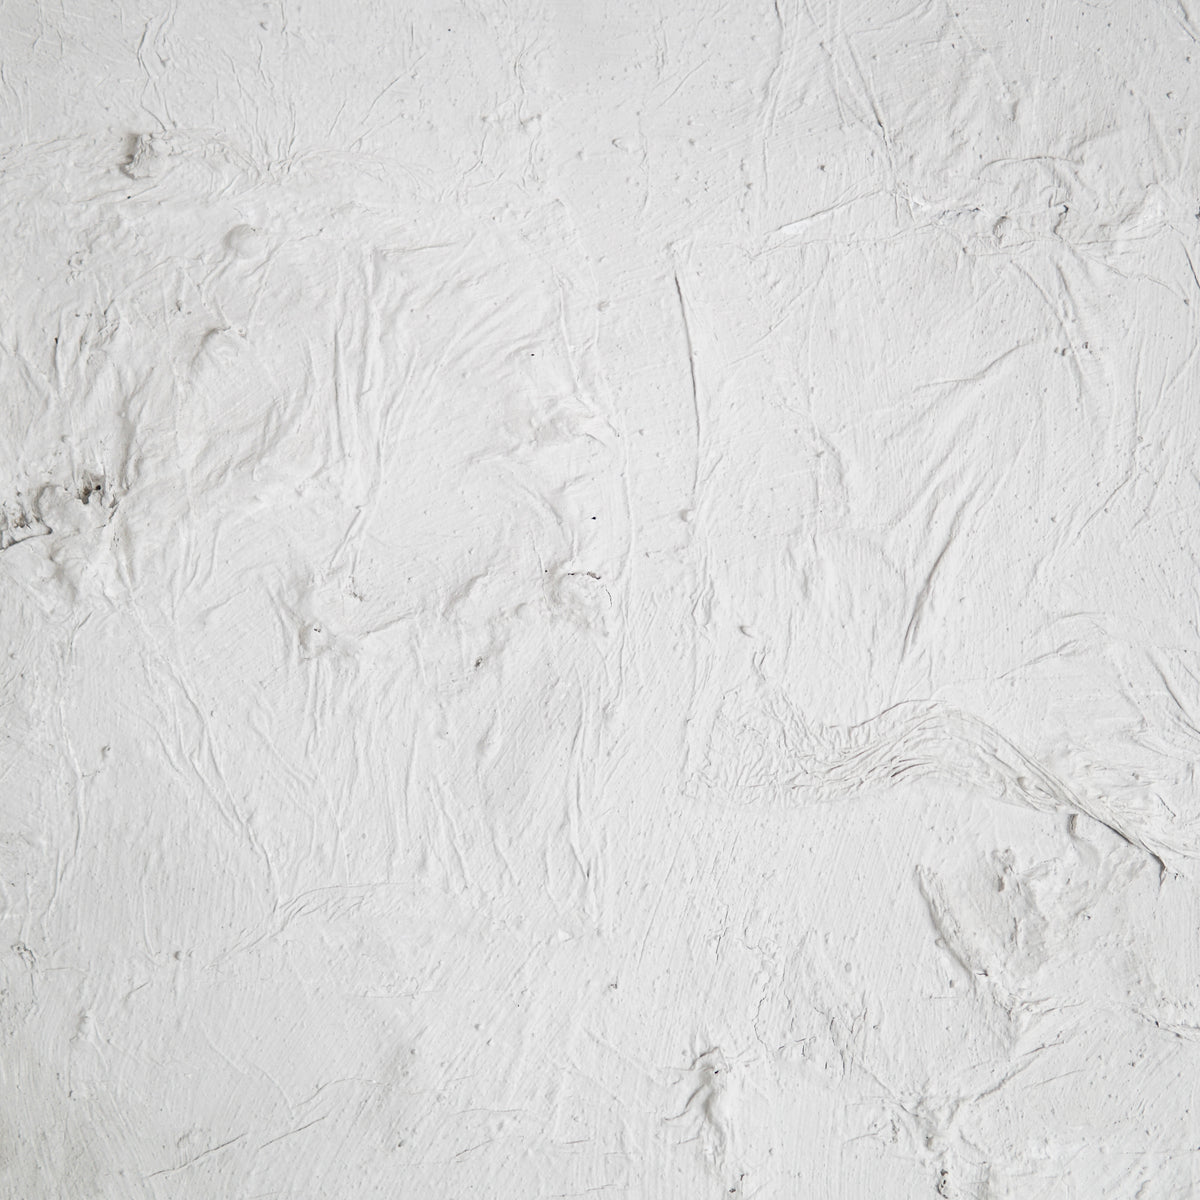 Ana Moraes | sem título V, 2021 | 110x70 cm | Tinta spray, silicone e papel sobre tela